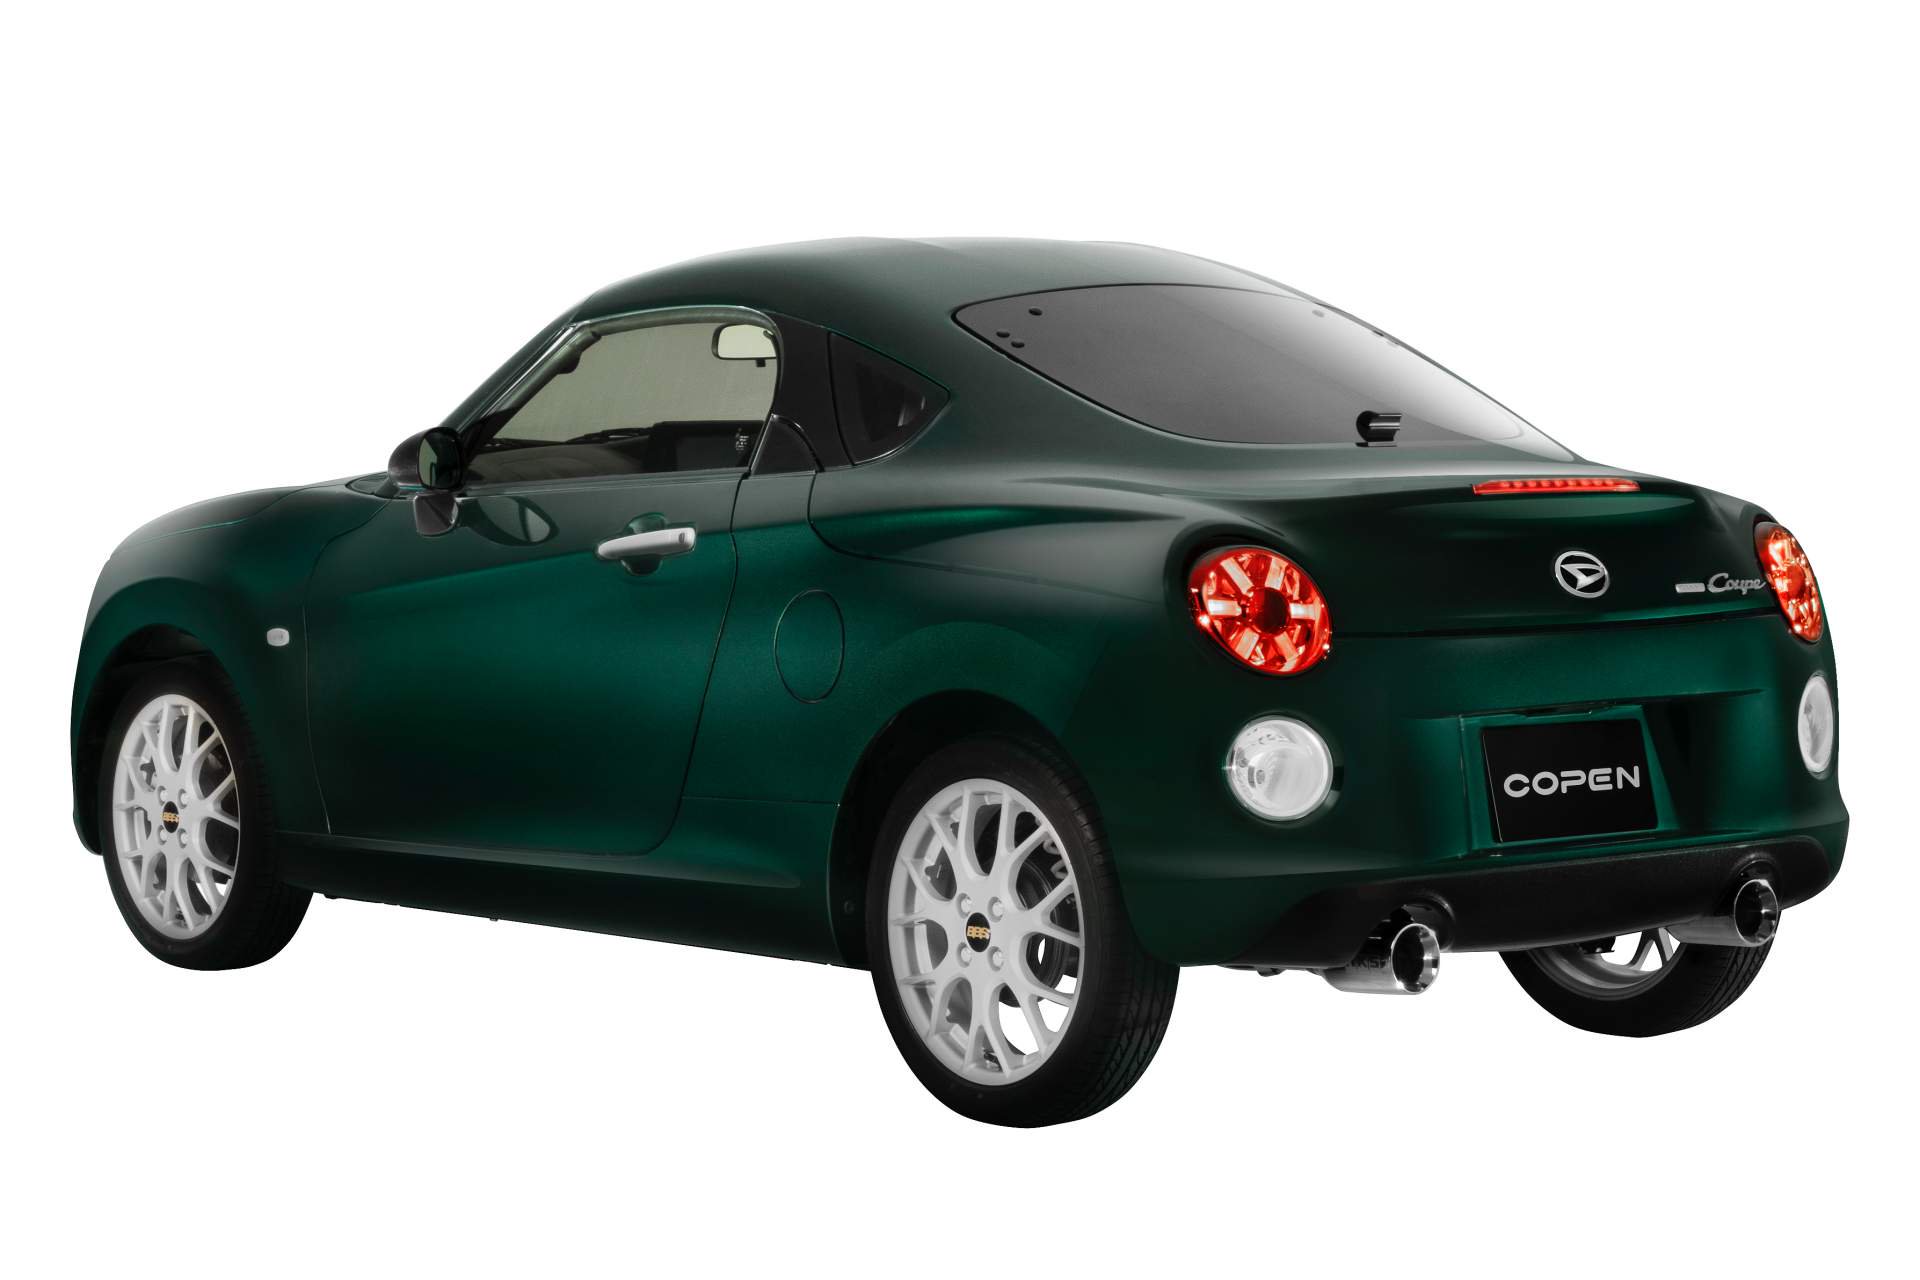 Bir dönem Türkiye'de de satılan Daihatsu Copen'in coupe versiyonu tanıtıldı